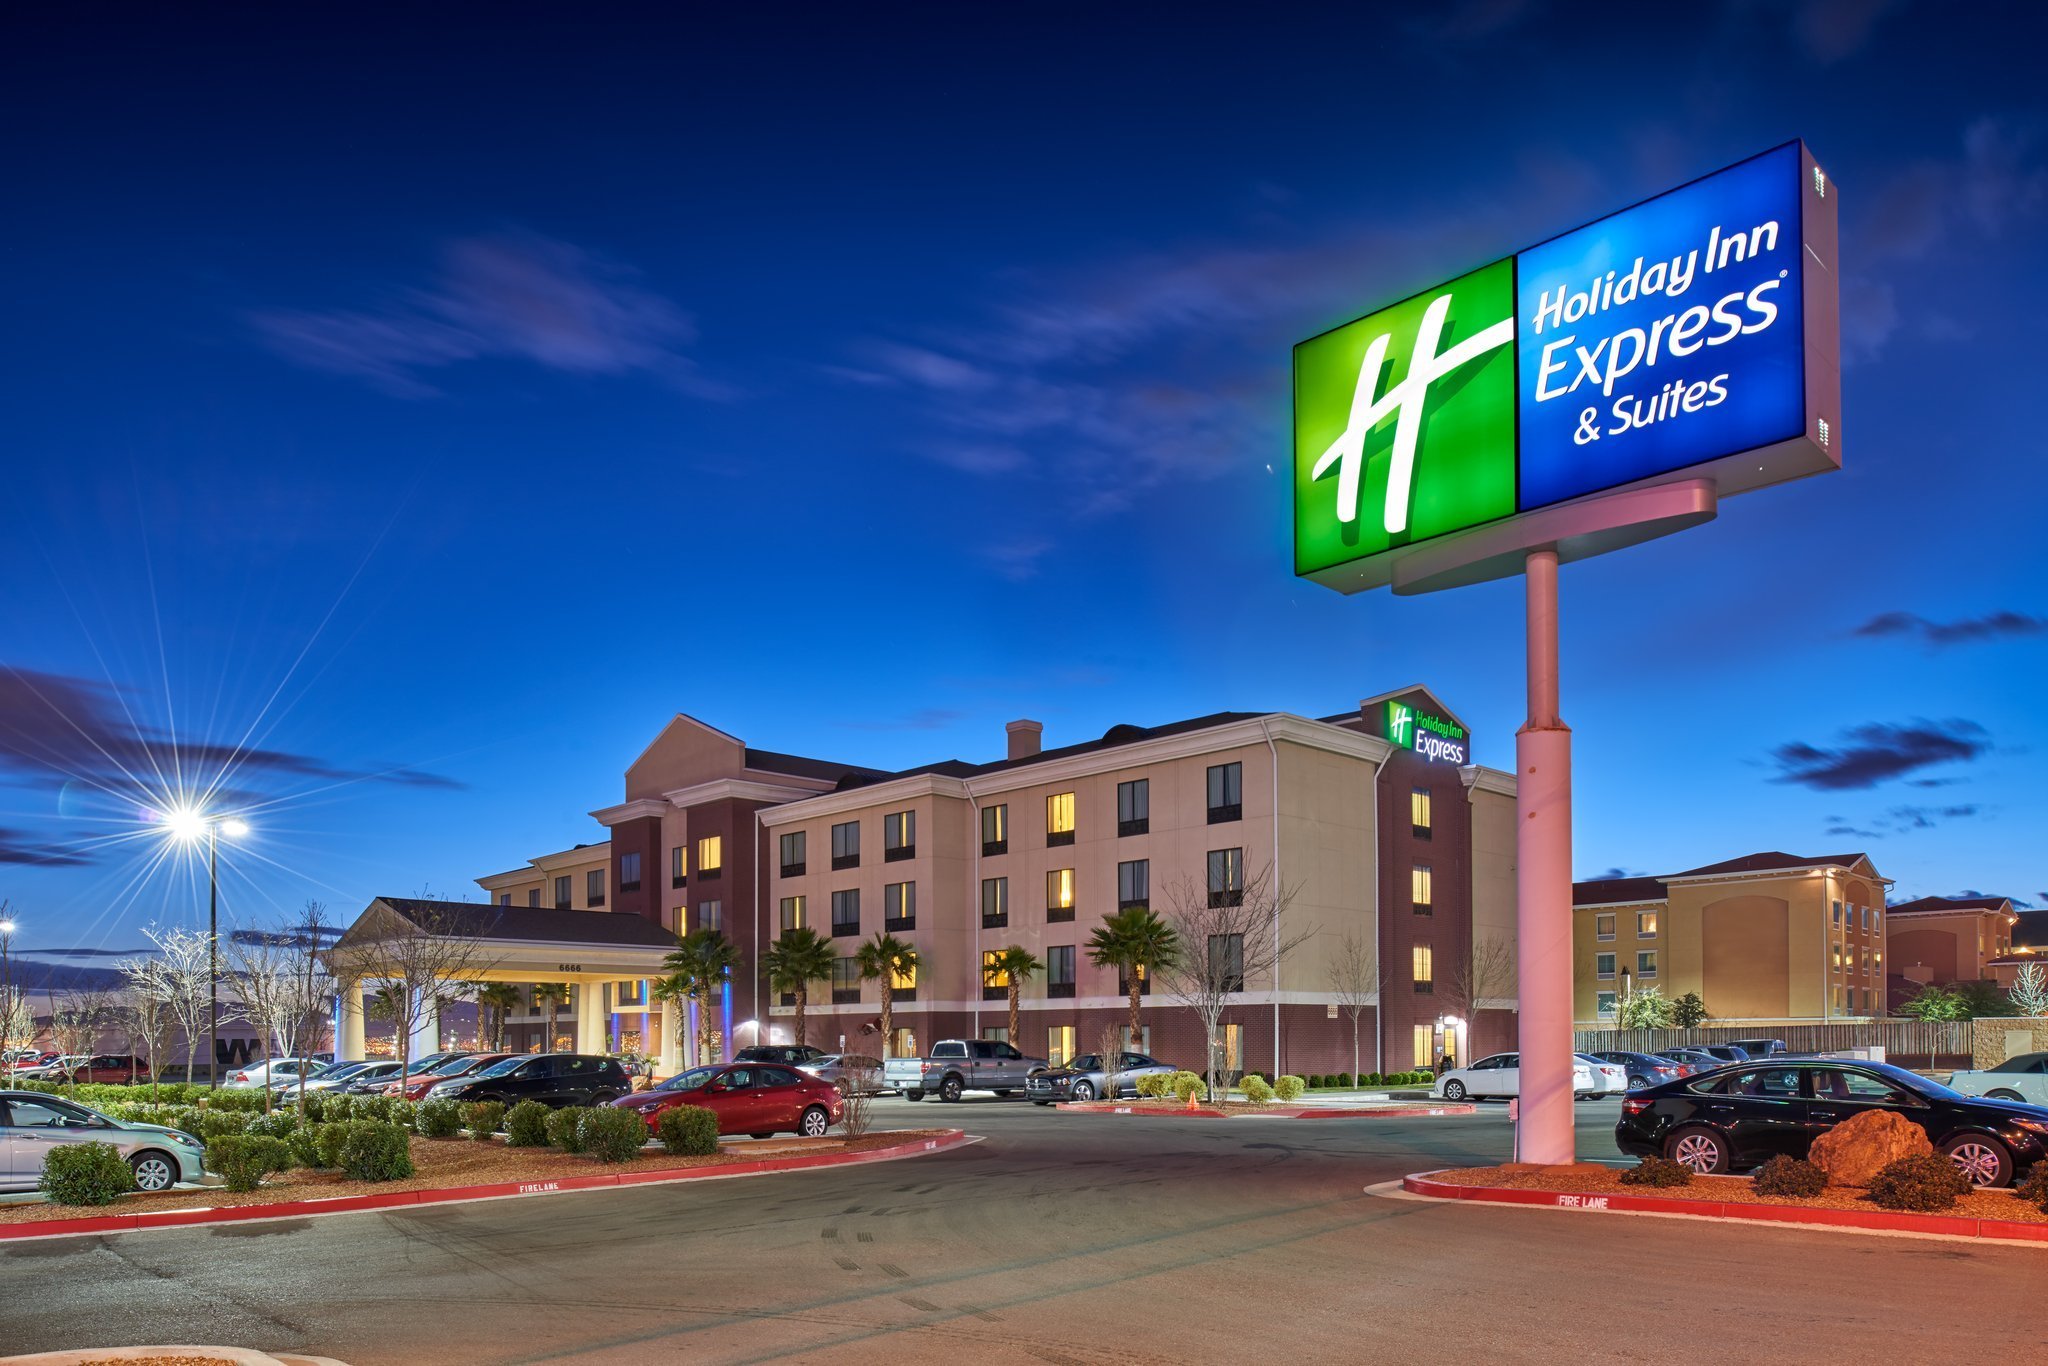 Photo of Holiday Inn Express & Suites El Paso Airport, El Paso, TX